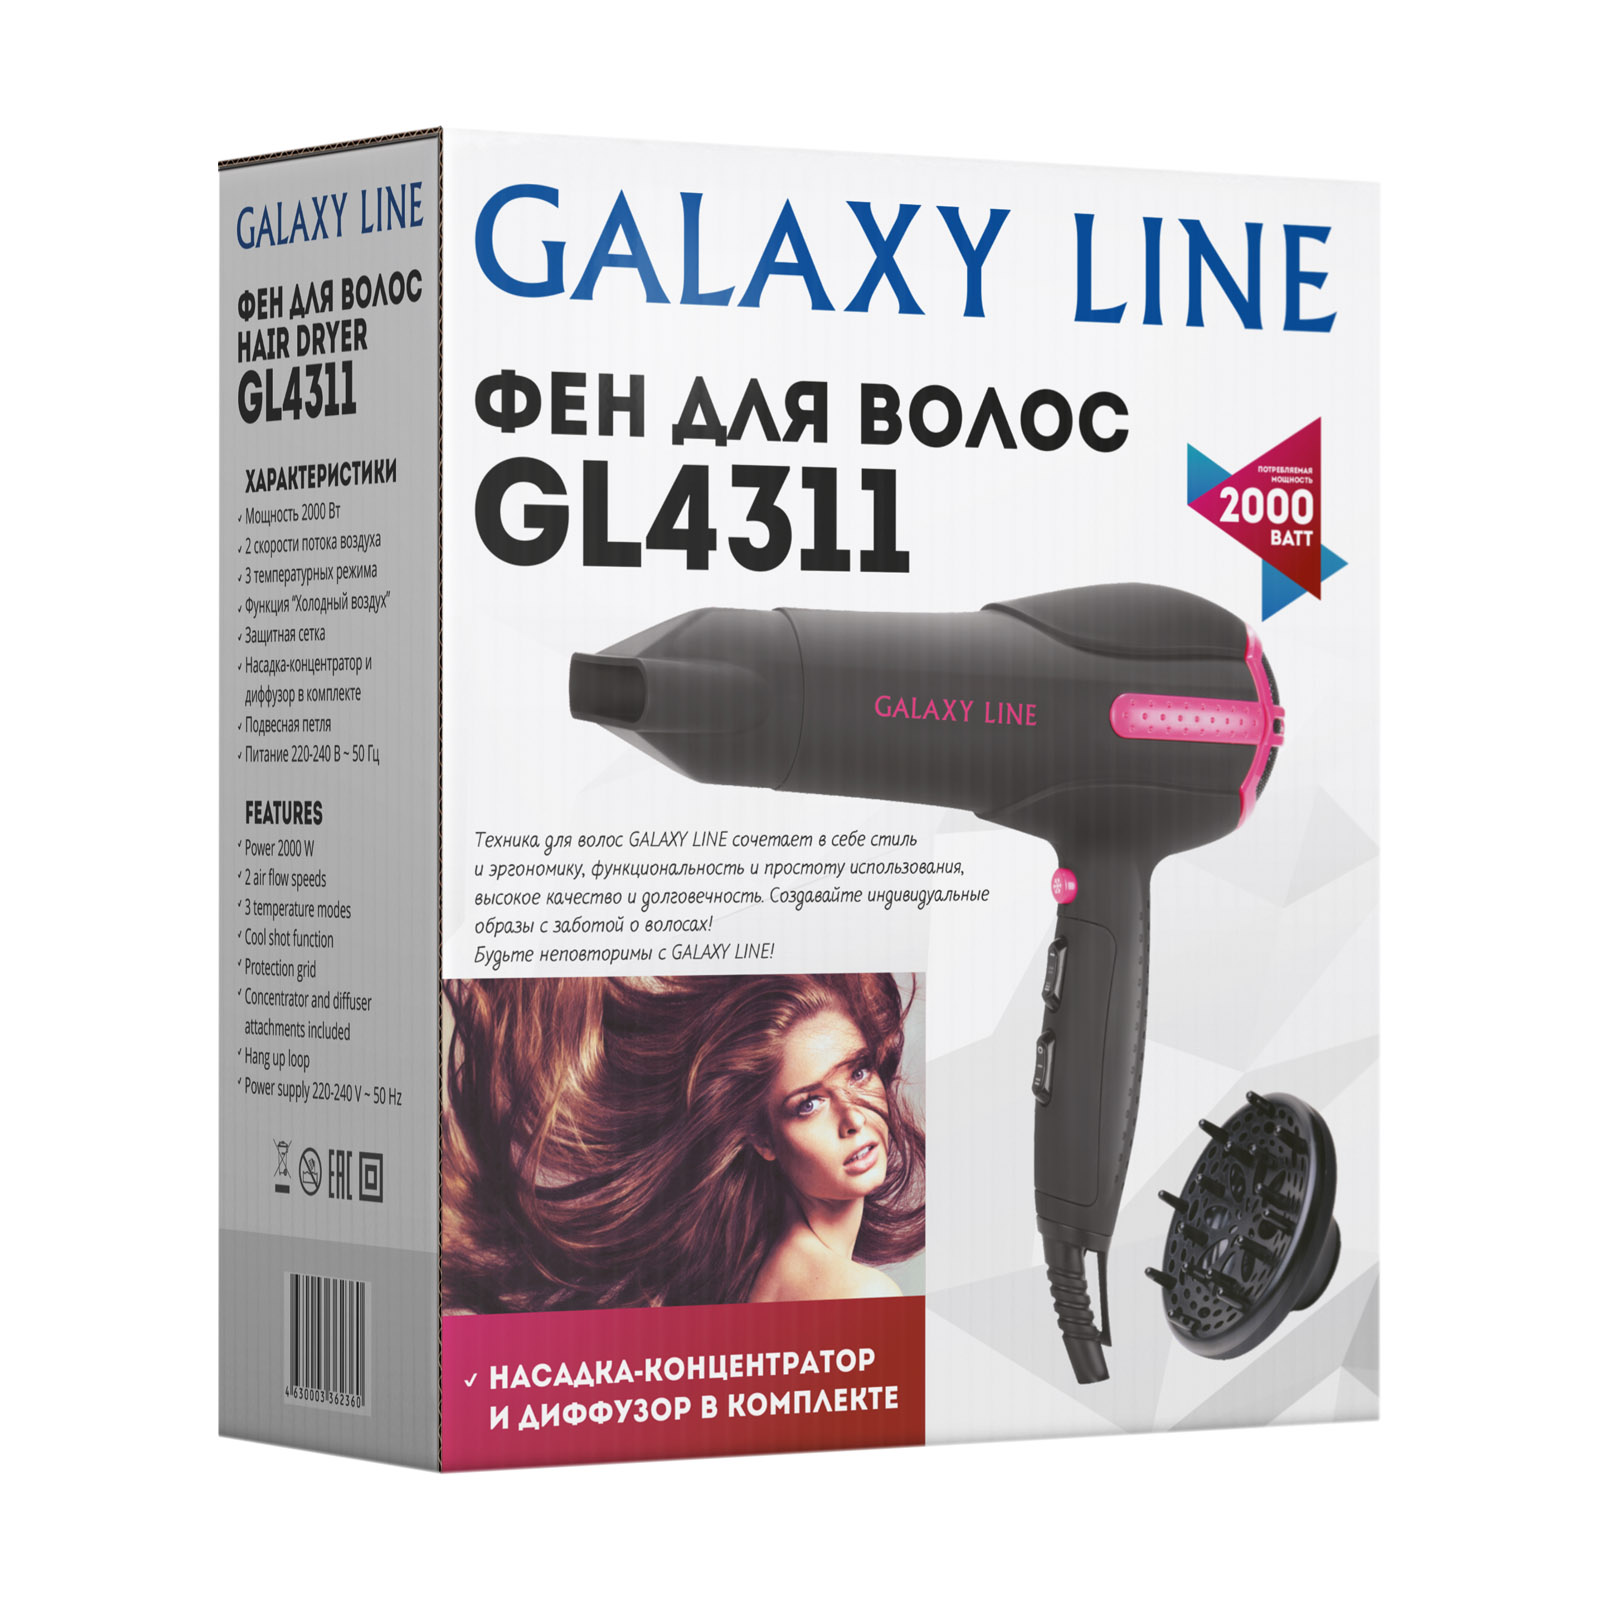 Фен для волос профессиональный 2000 Вт Galaxy Line Galaxy Line DMH-ГЛ4311Л - фото 6